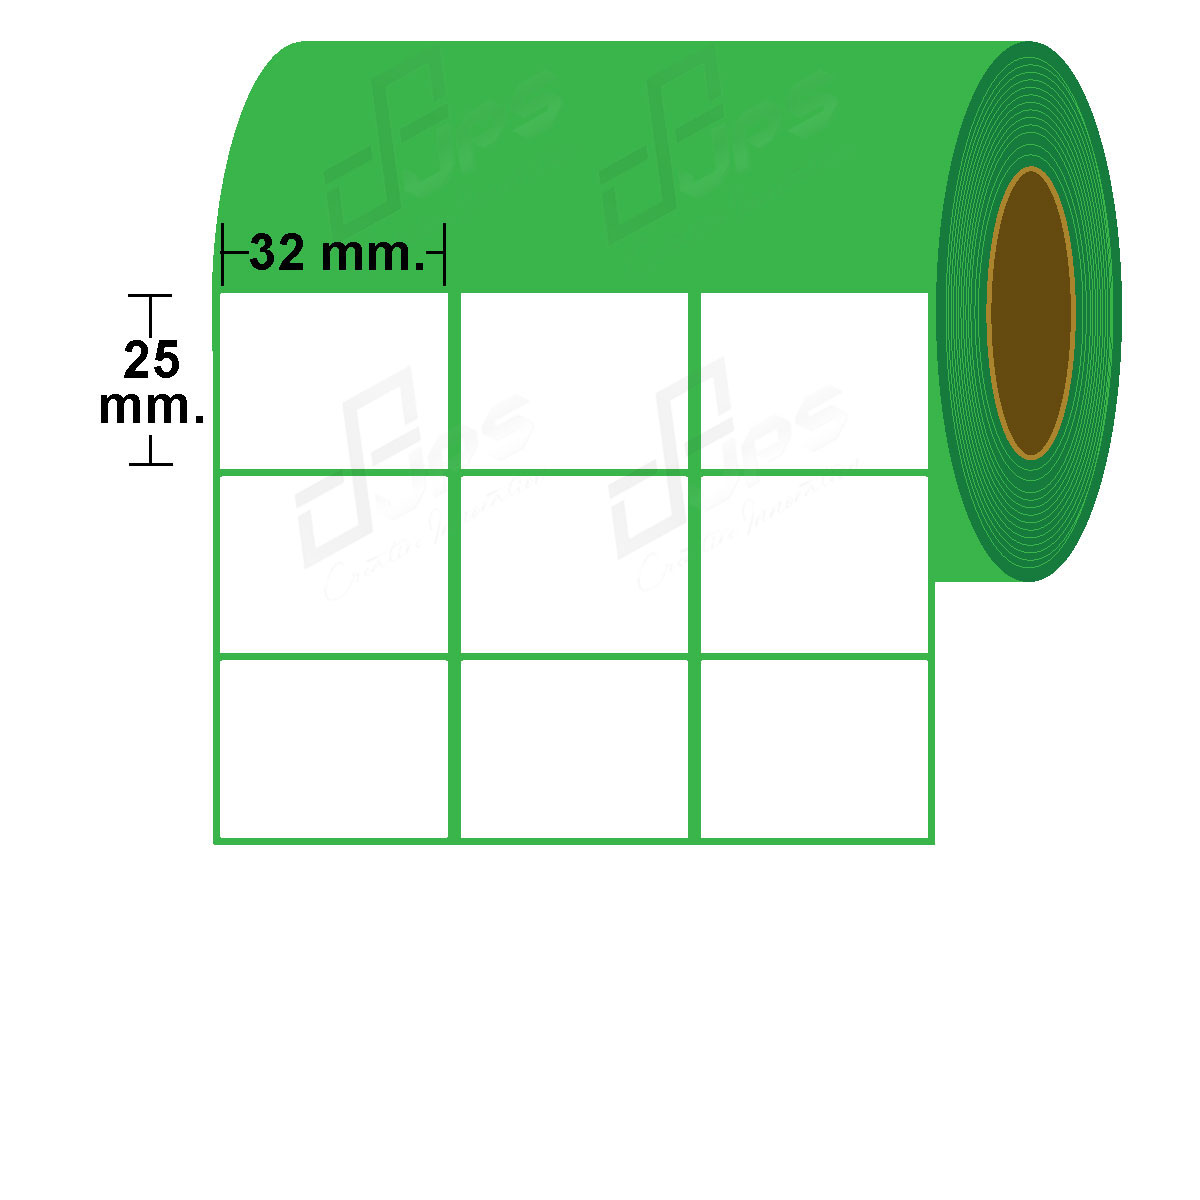 สติ๊กเกอร์กึ่งมันกึ่งด้าน ขนาด 32 mm. x 25 mm.